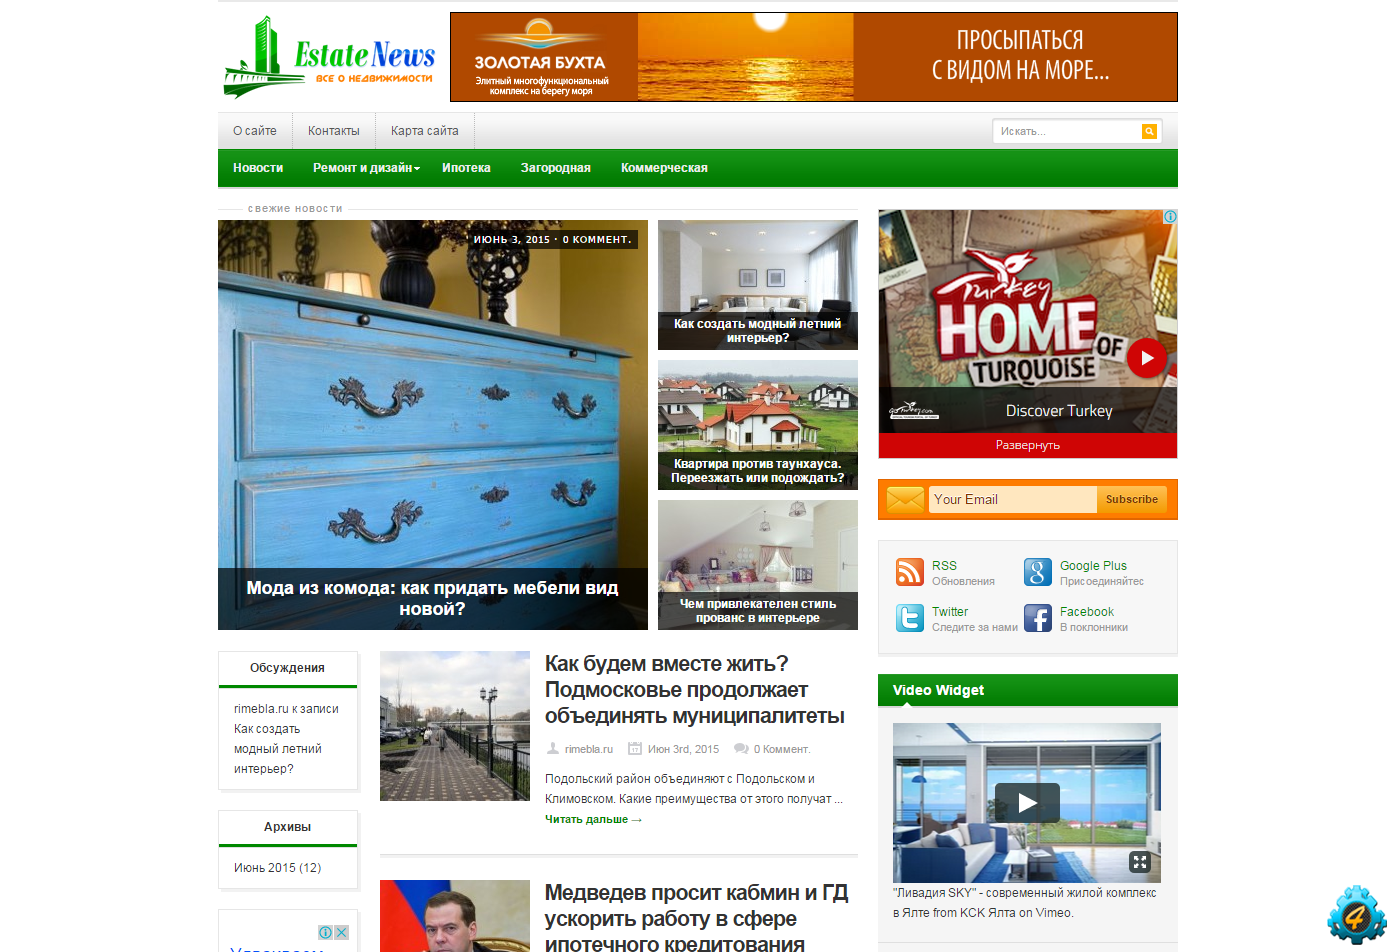 Сайты недвижимости нижнего новгорода